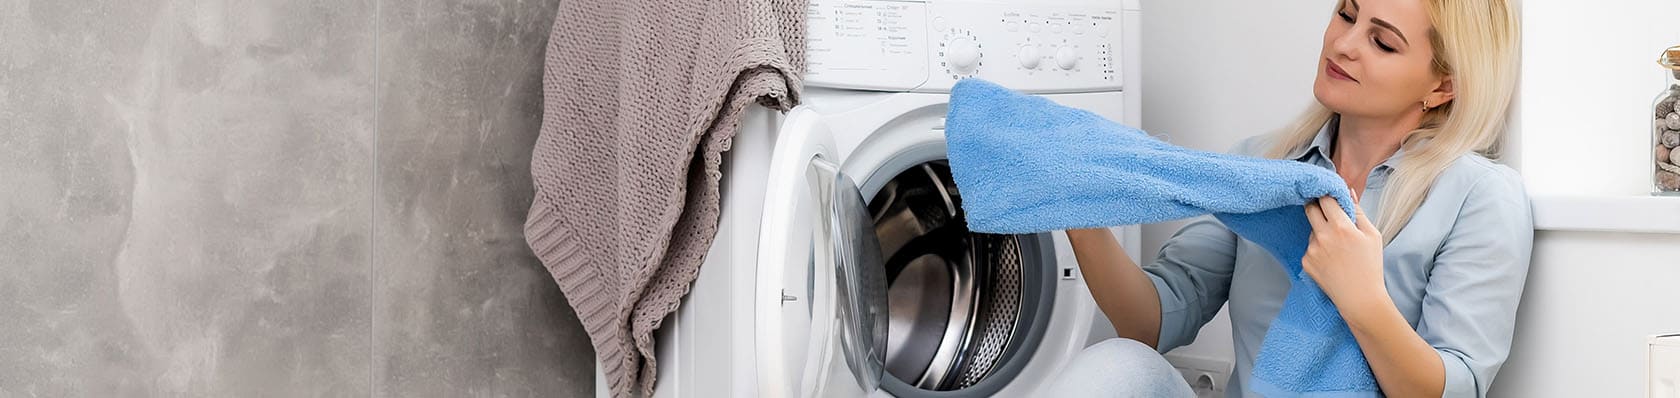 Choisir les meilleurs lave-linges encastrables - Ce linge propre